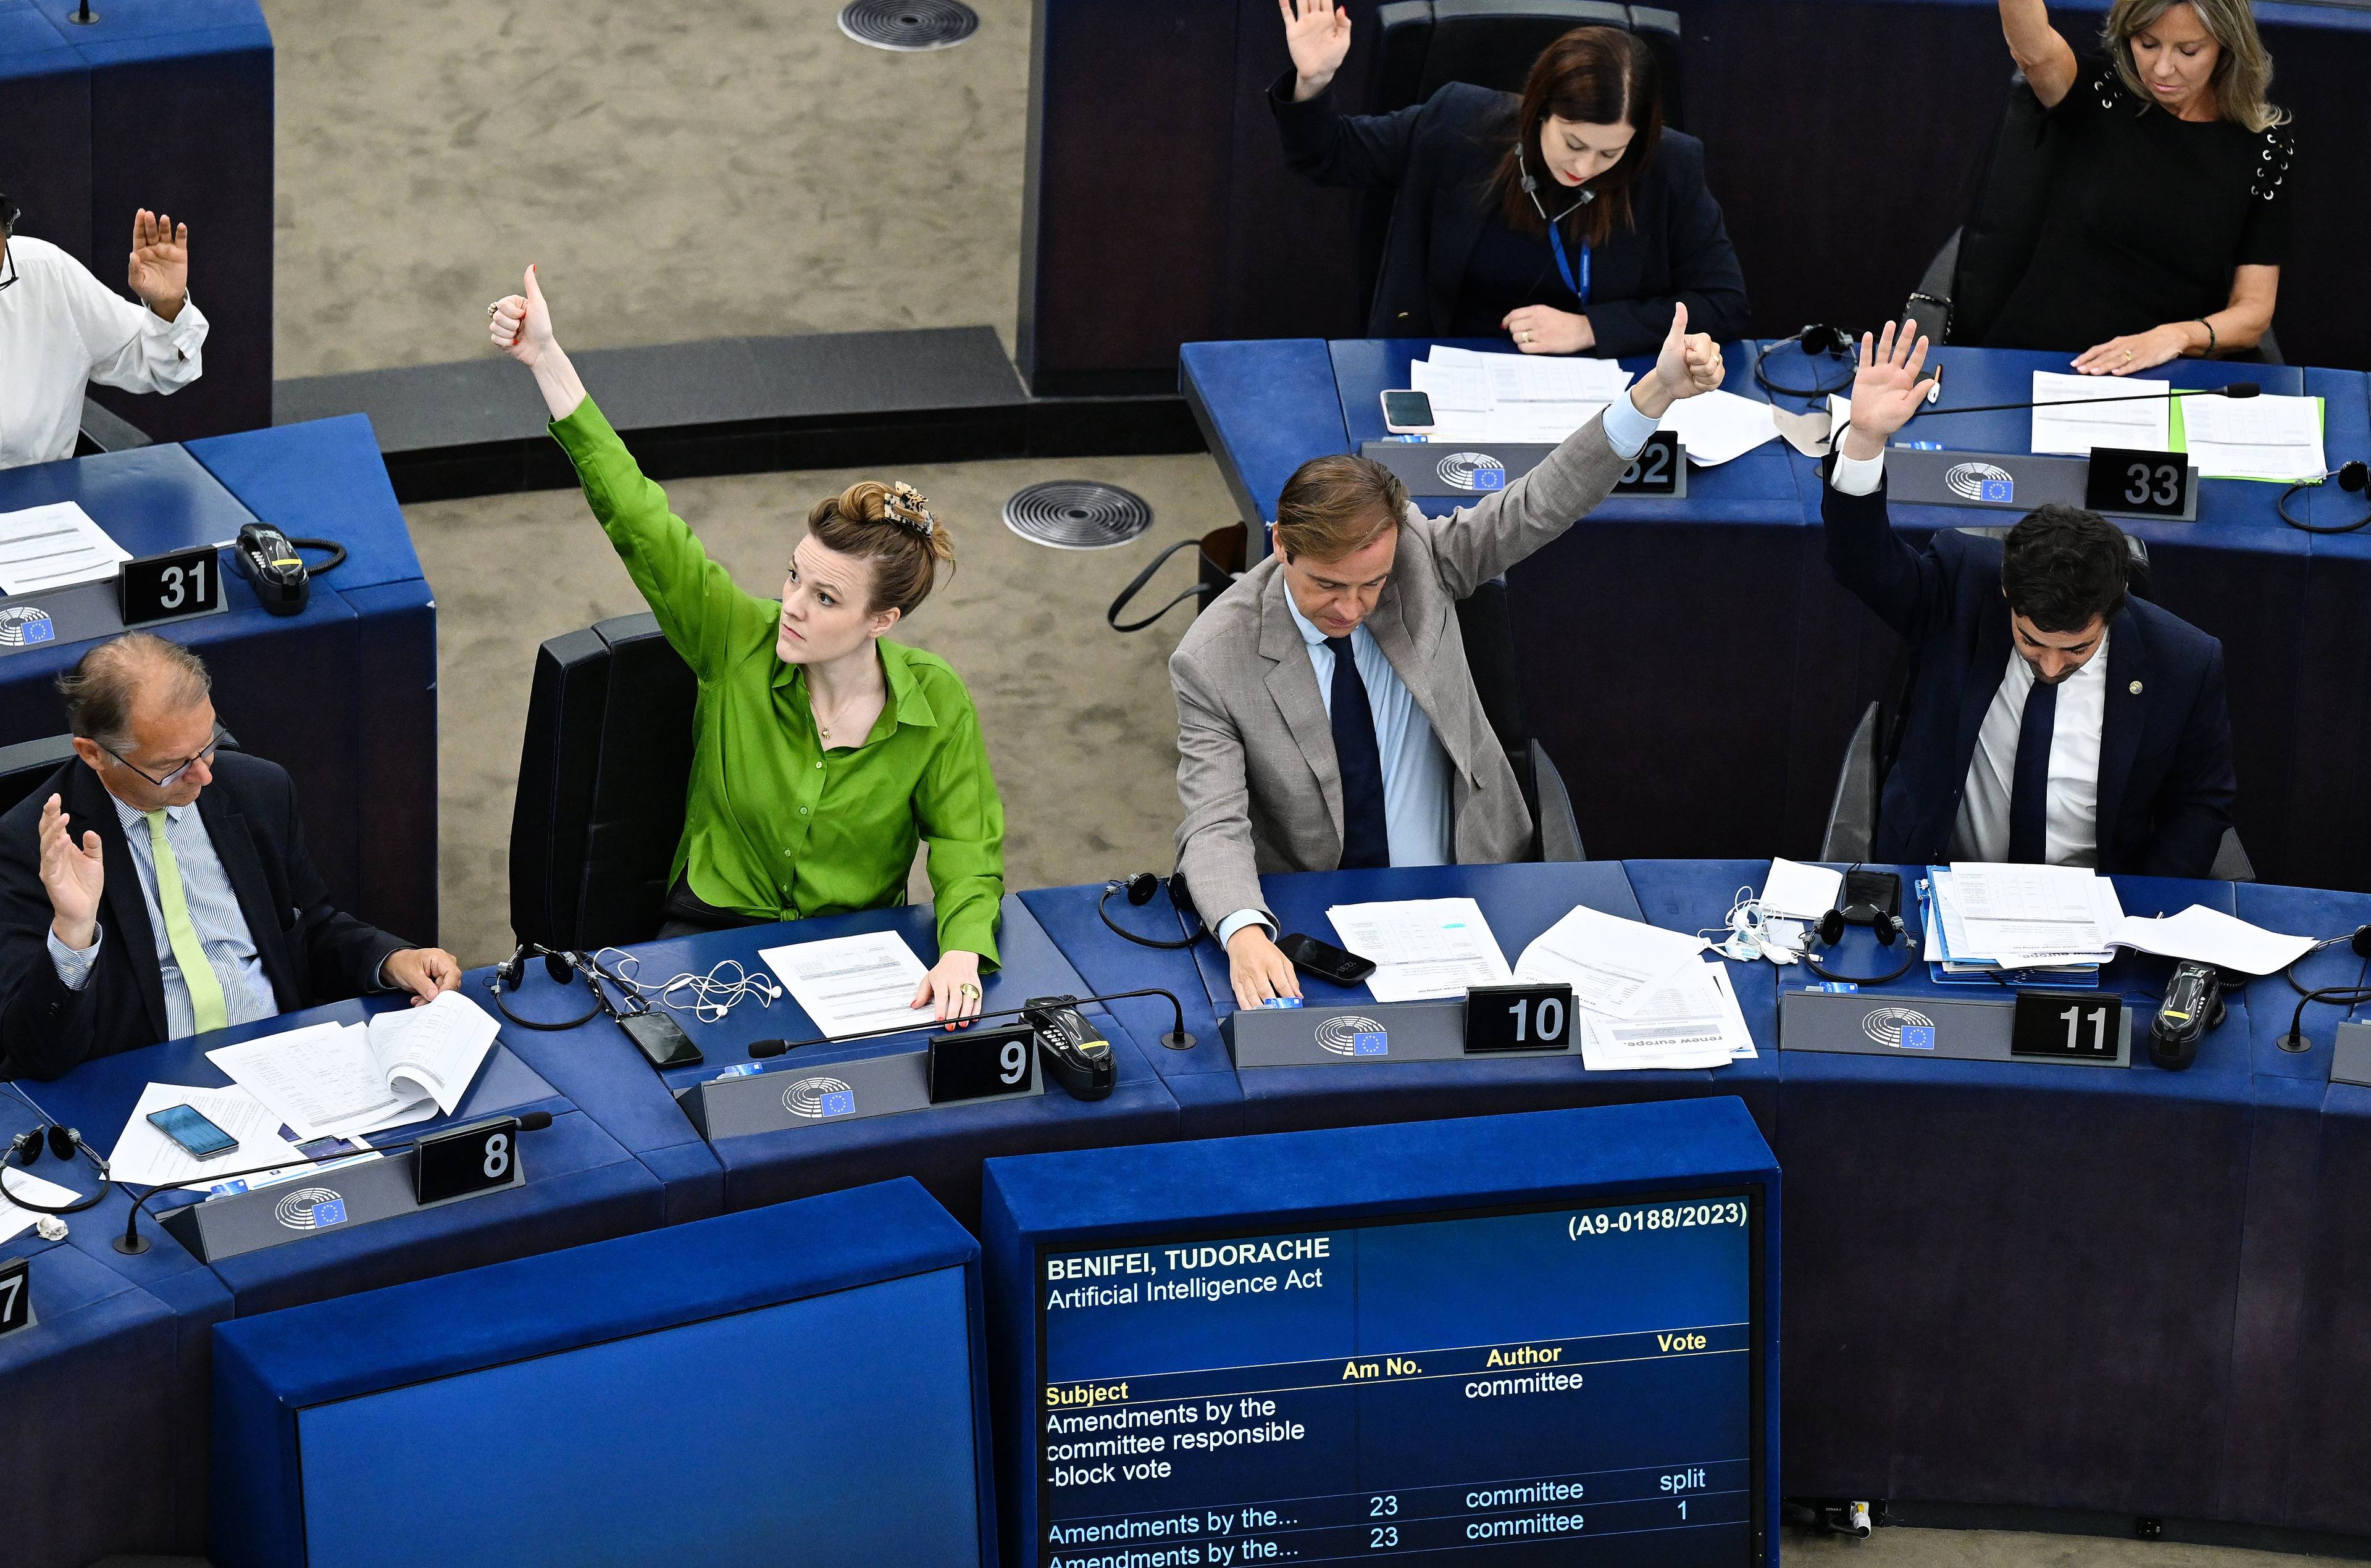 Sala Parlamentu Europejskiego. Kobieta w zielonej bluzce głosuje prawą ręką, a mężczyzna w szarym garniturze - podnosi rękę lewą